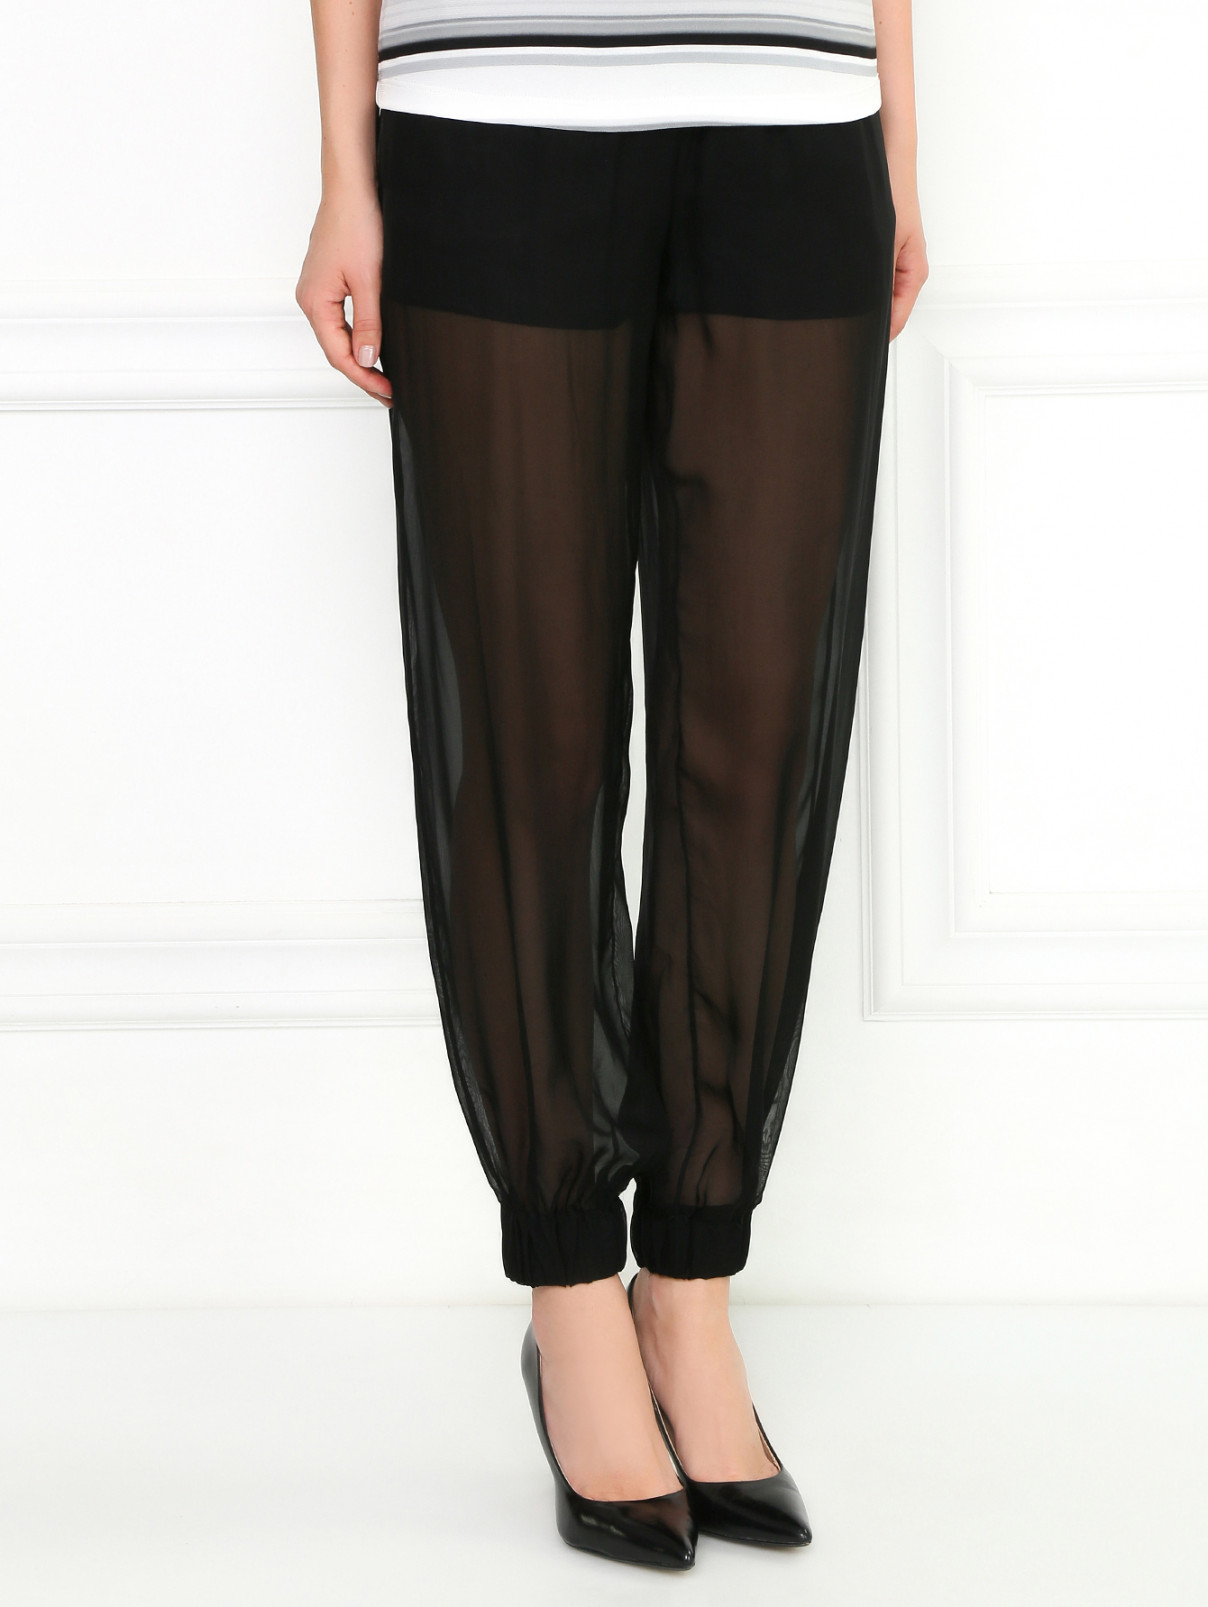 Прозрачные брюки на резинке Jay Ahr  –  Модель Верх-Низ  – Цвет:  Черный